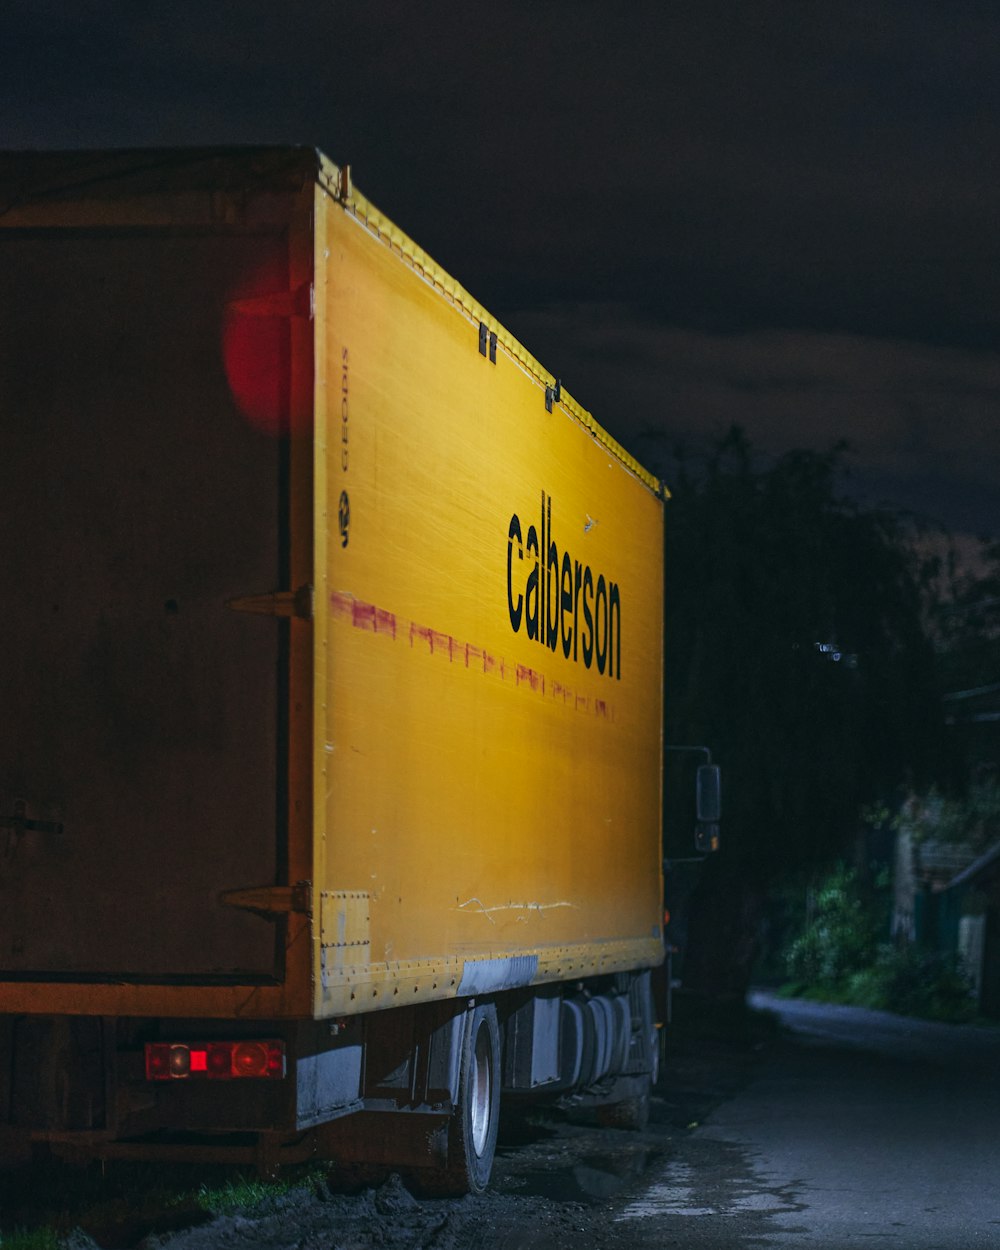 camion furgone giallo e rosso su strada durante la notte